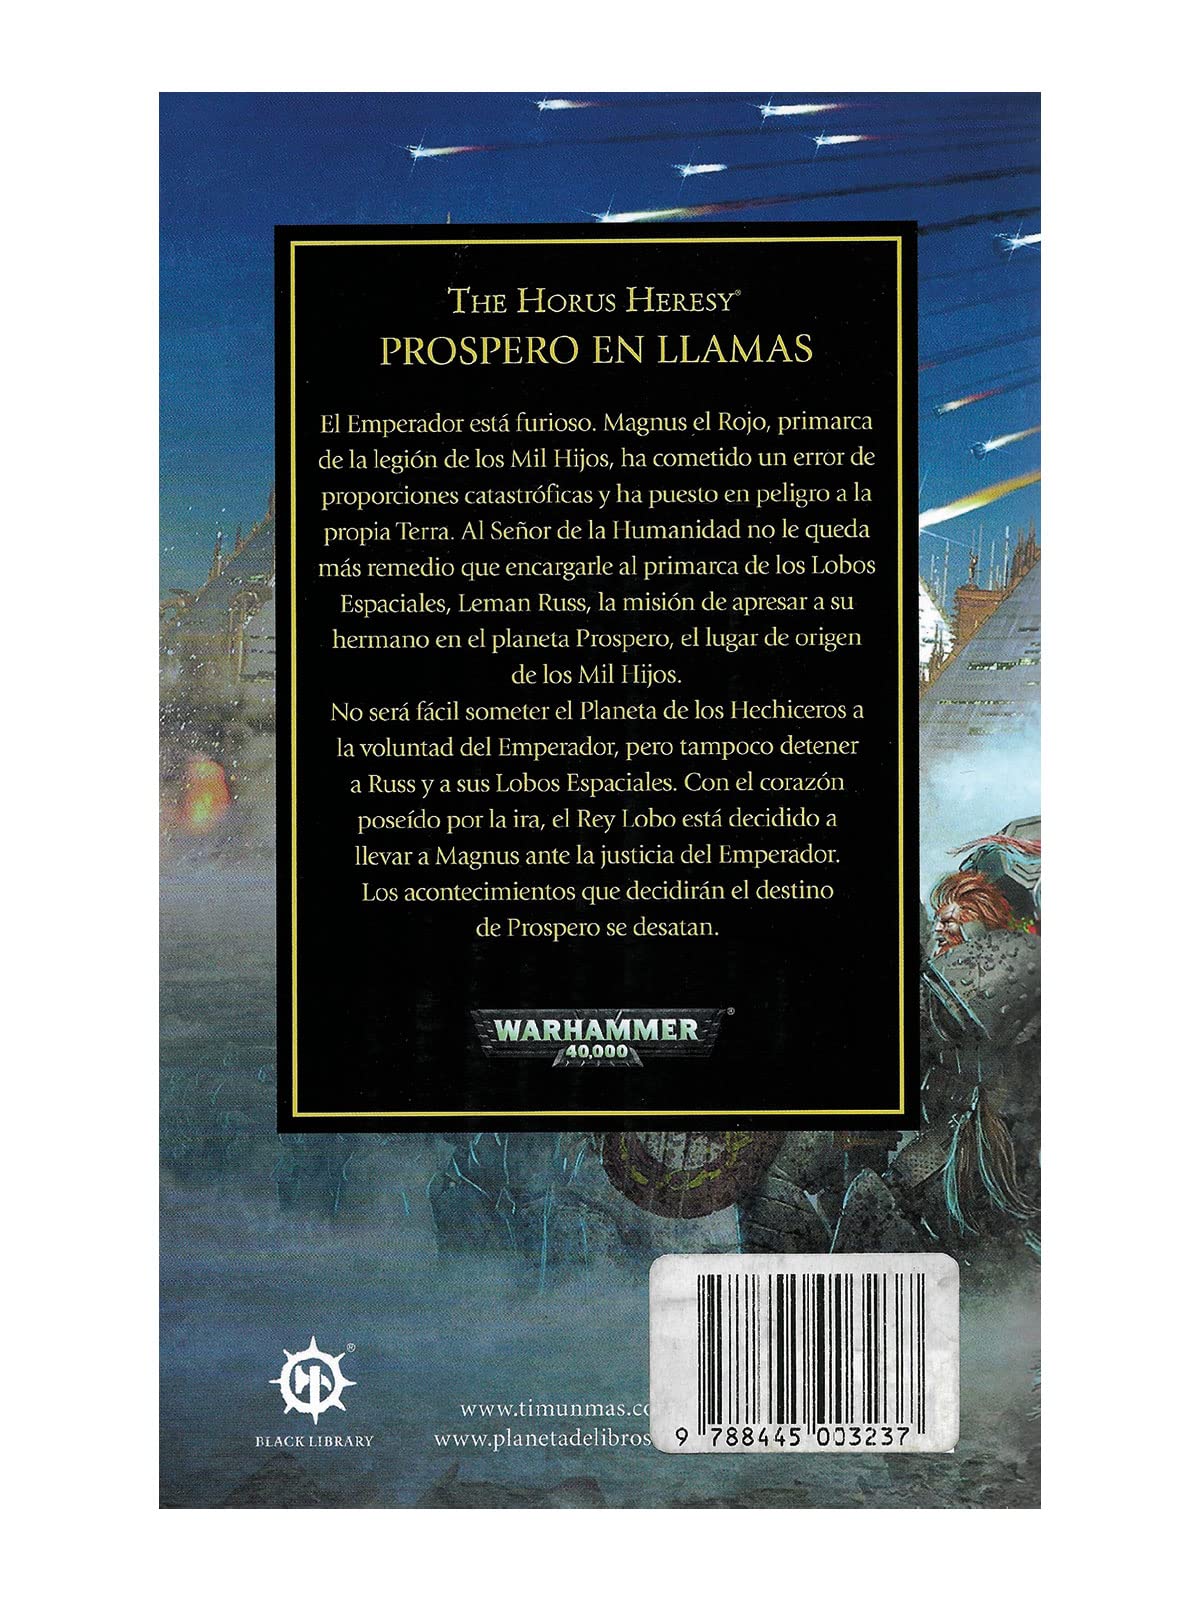 Libro: Próspero en Llamas, Los Lobos Atacan - Libro 15 de 54: Warhammer The Horus Heresy por Dan Abnett